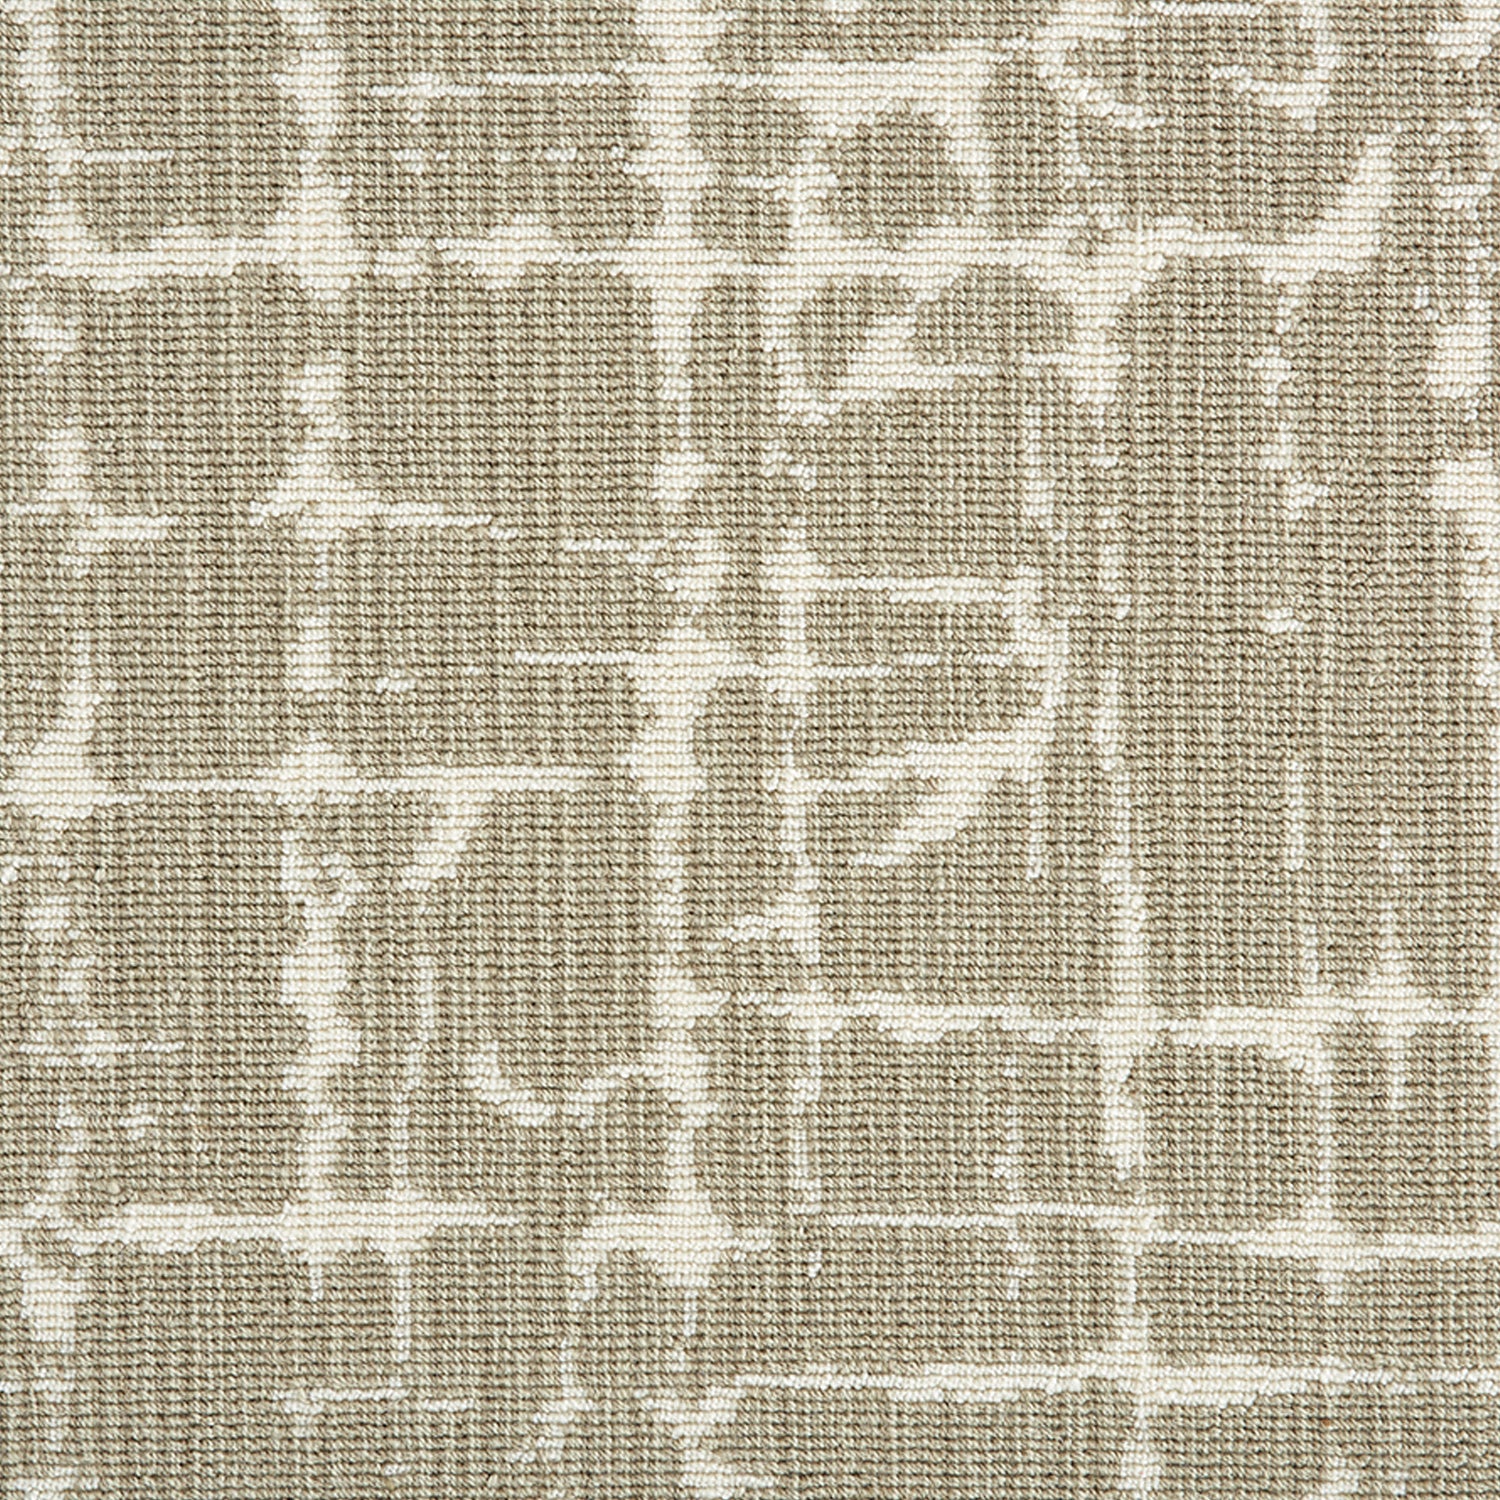 Wool-blend broadloom carpet swatch in an abstract grid pattern in cream on a tan field.